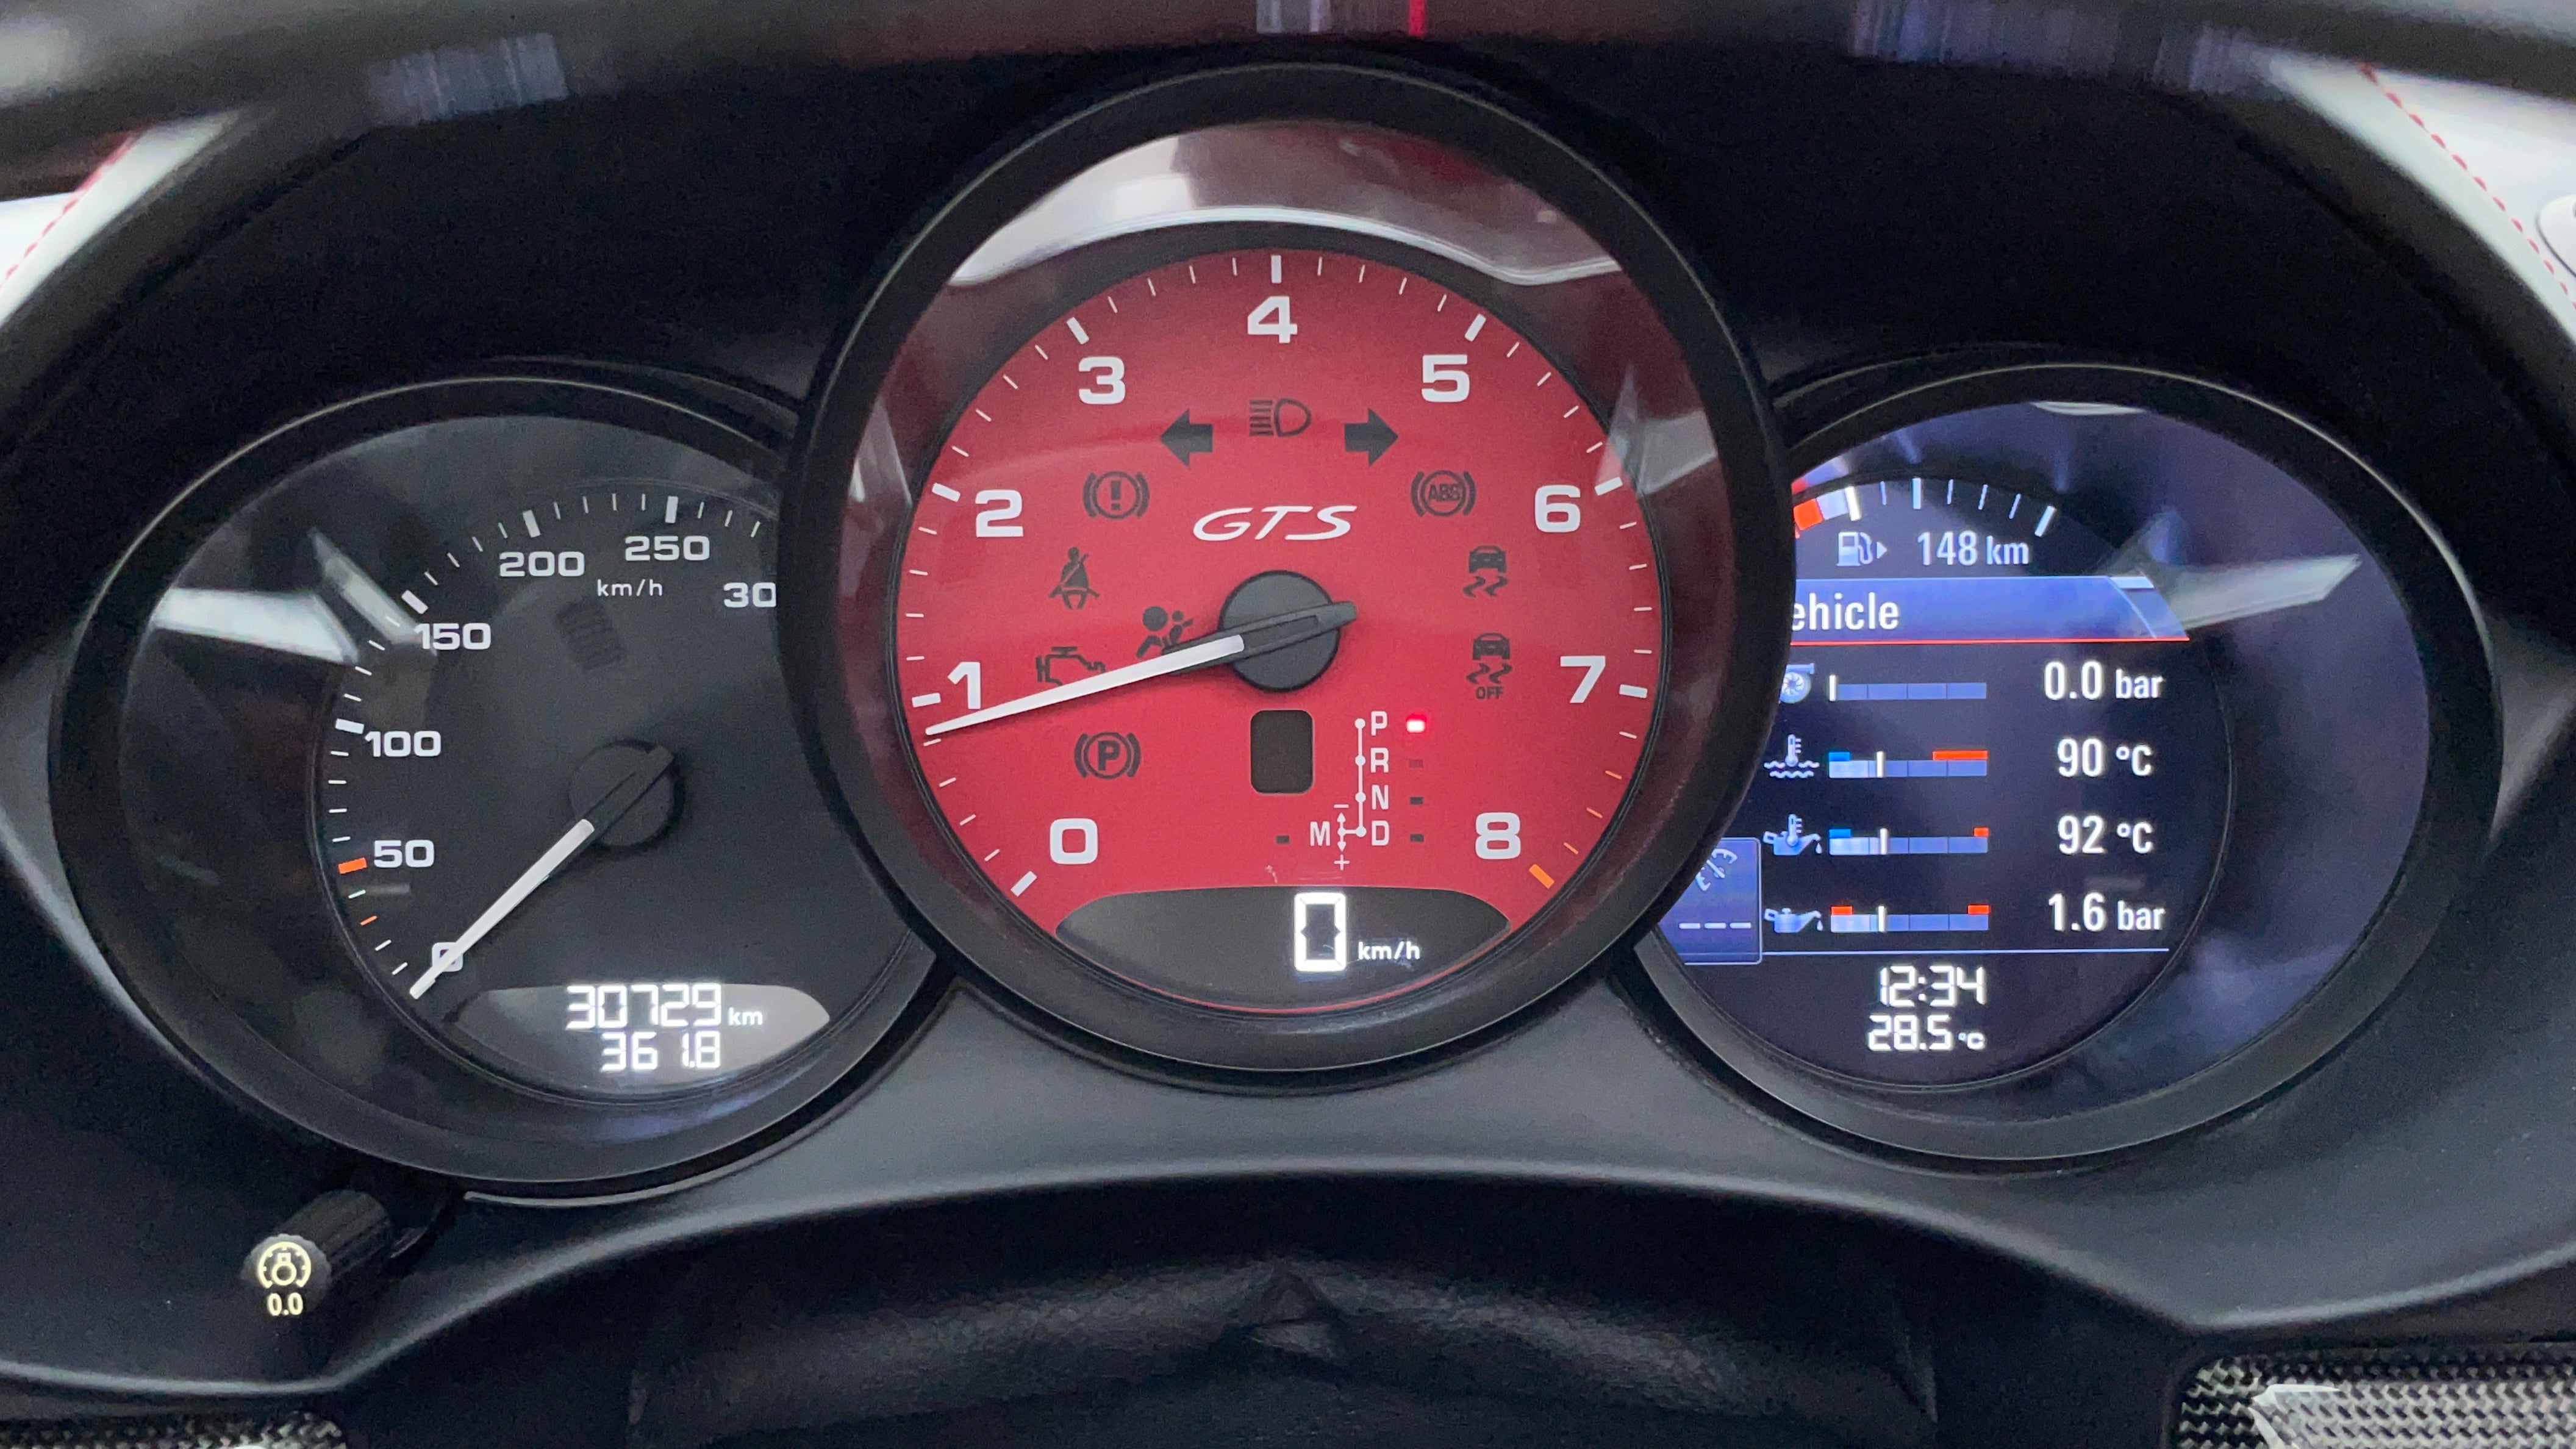 Porsche Boxster-Odometer View